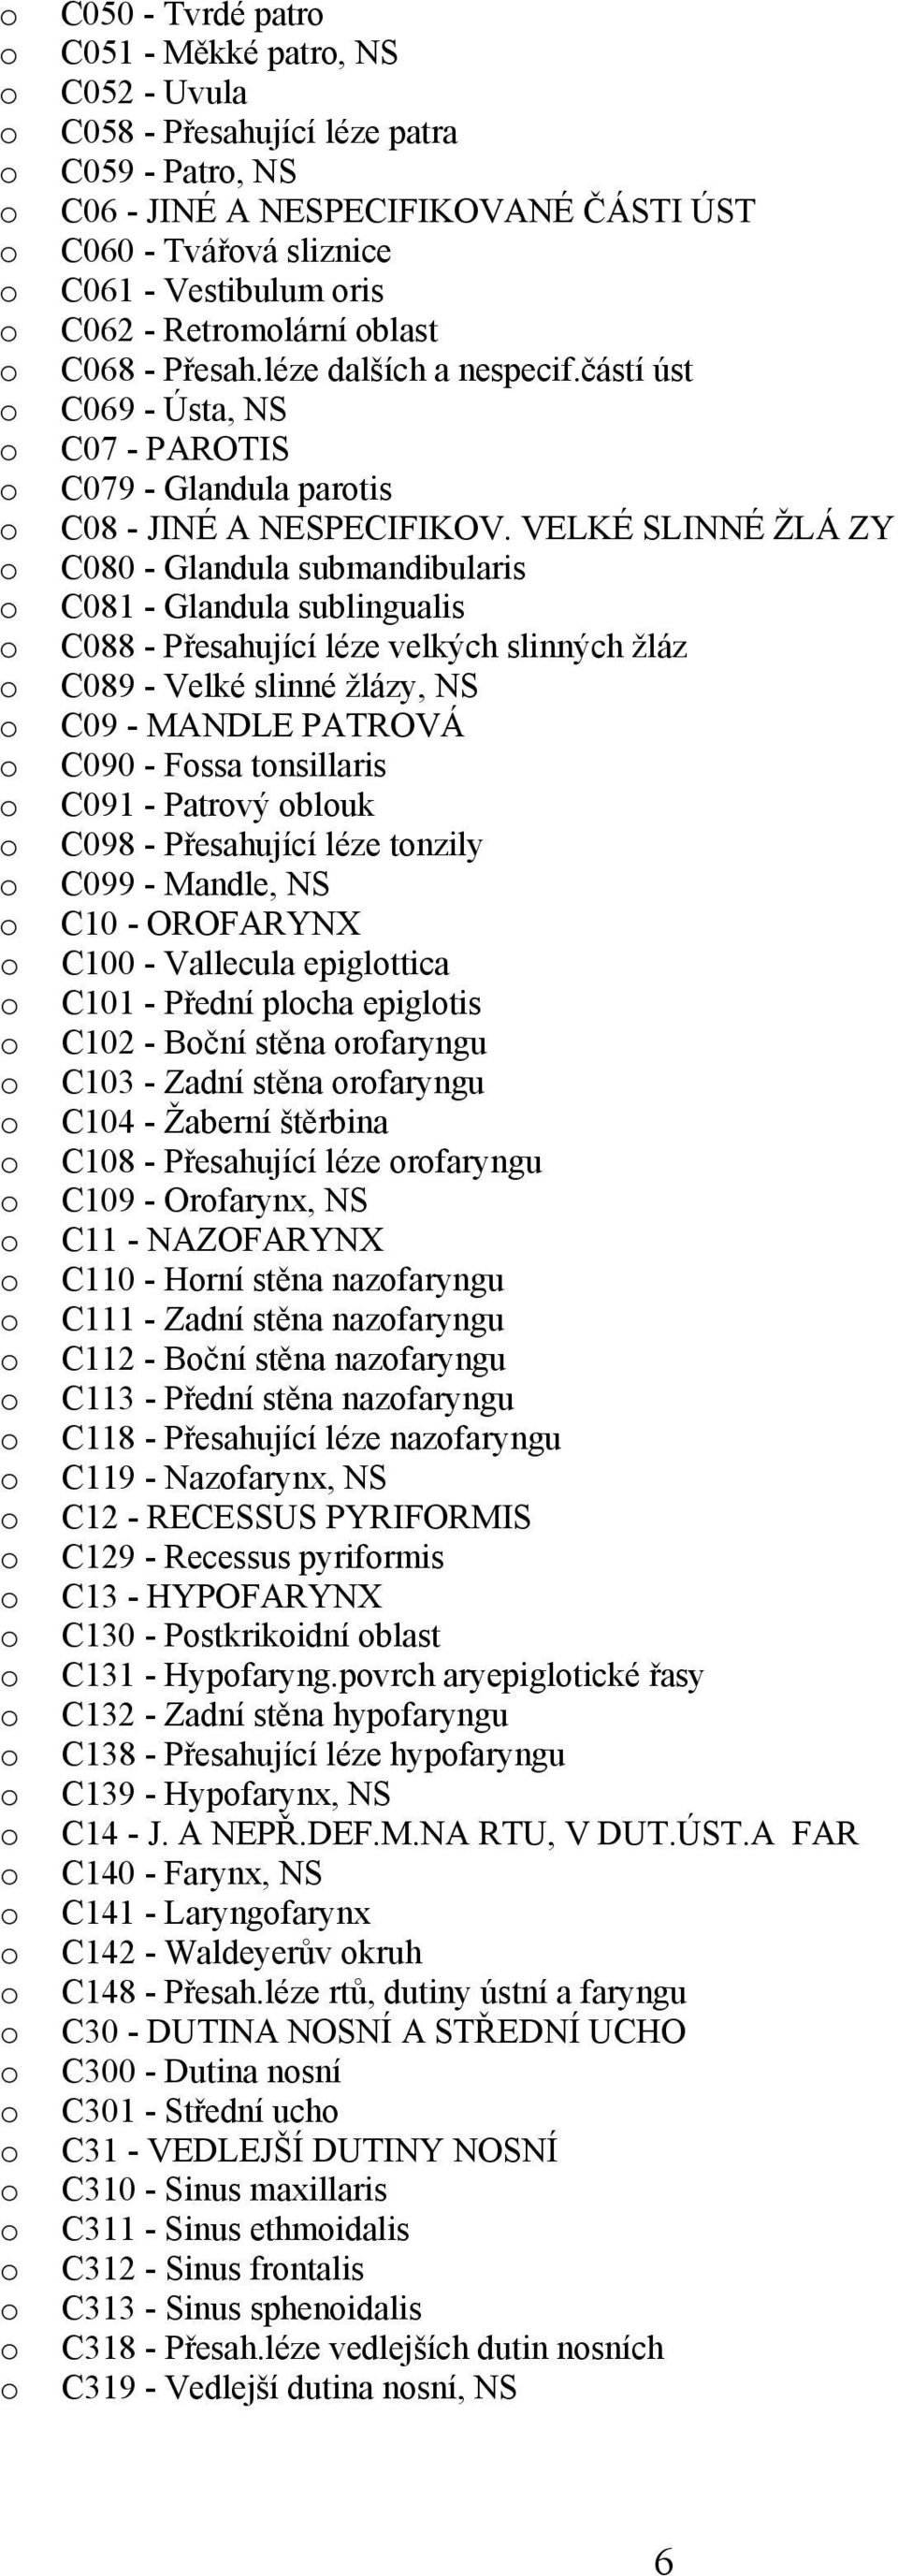 VELKÉ SLINNÉ ŽLÁ ZY C080 - Glandula submandibularis C081 - Glandula sublingualis C088 - Přesahující léze velkých slinných žláz C089 - Velké slinné žlázy, NS C09 - MANDLE PATROVÁ C090 - Fssa